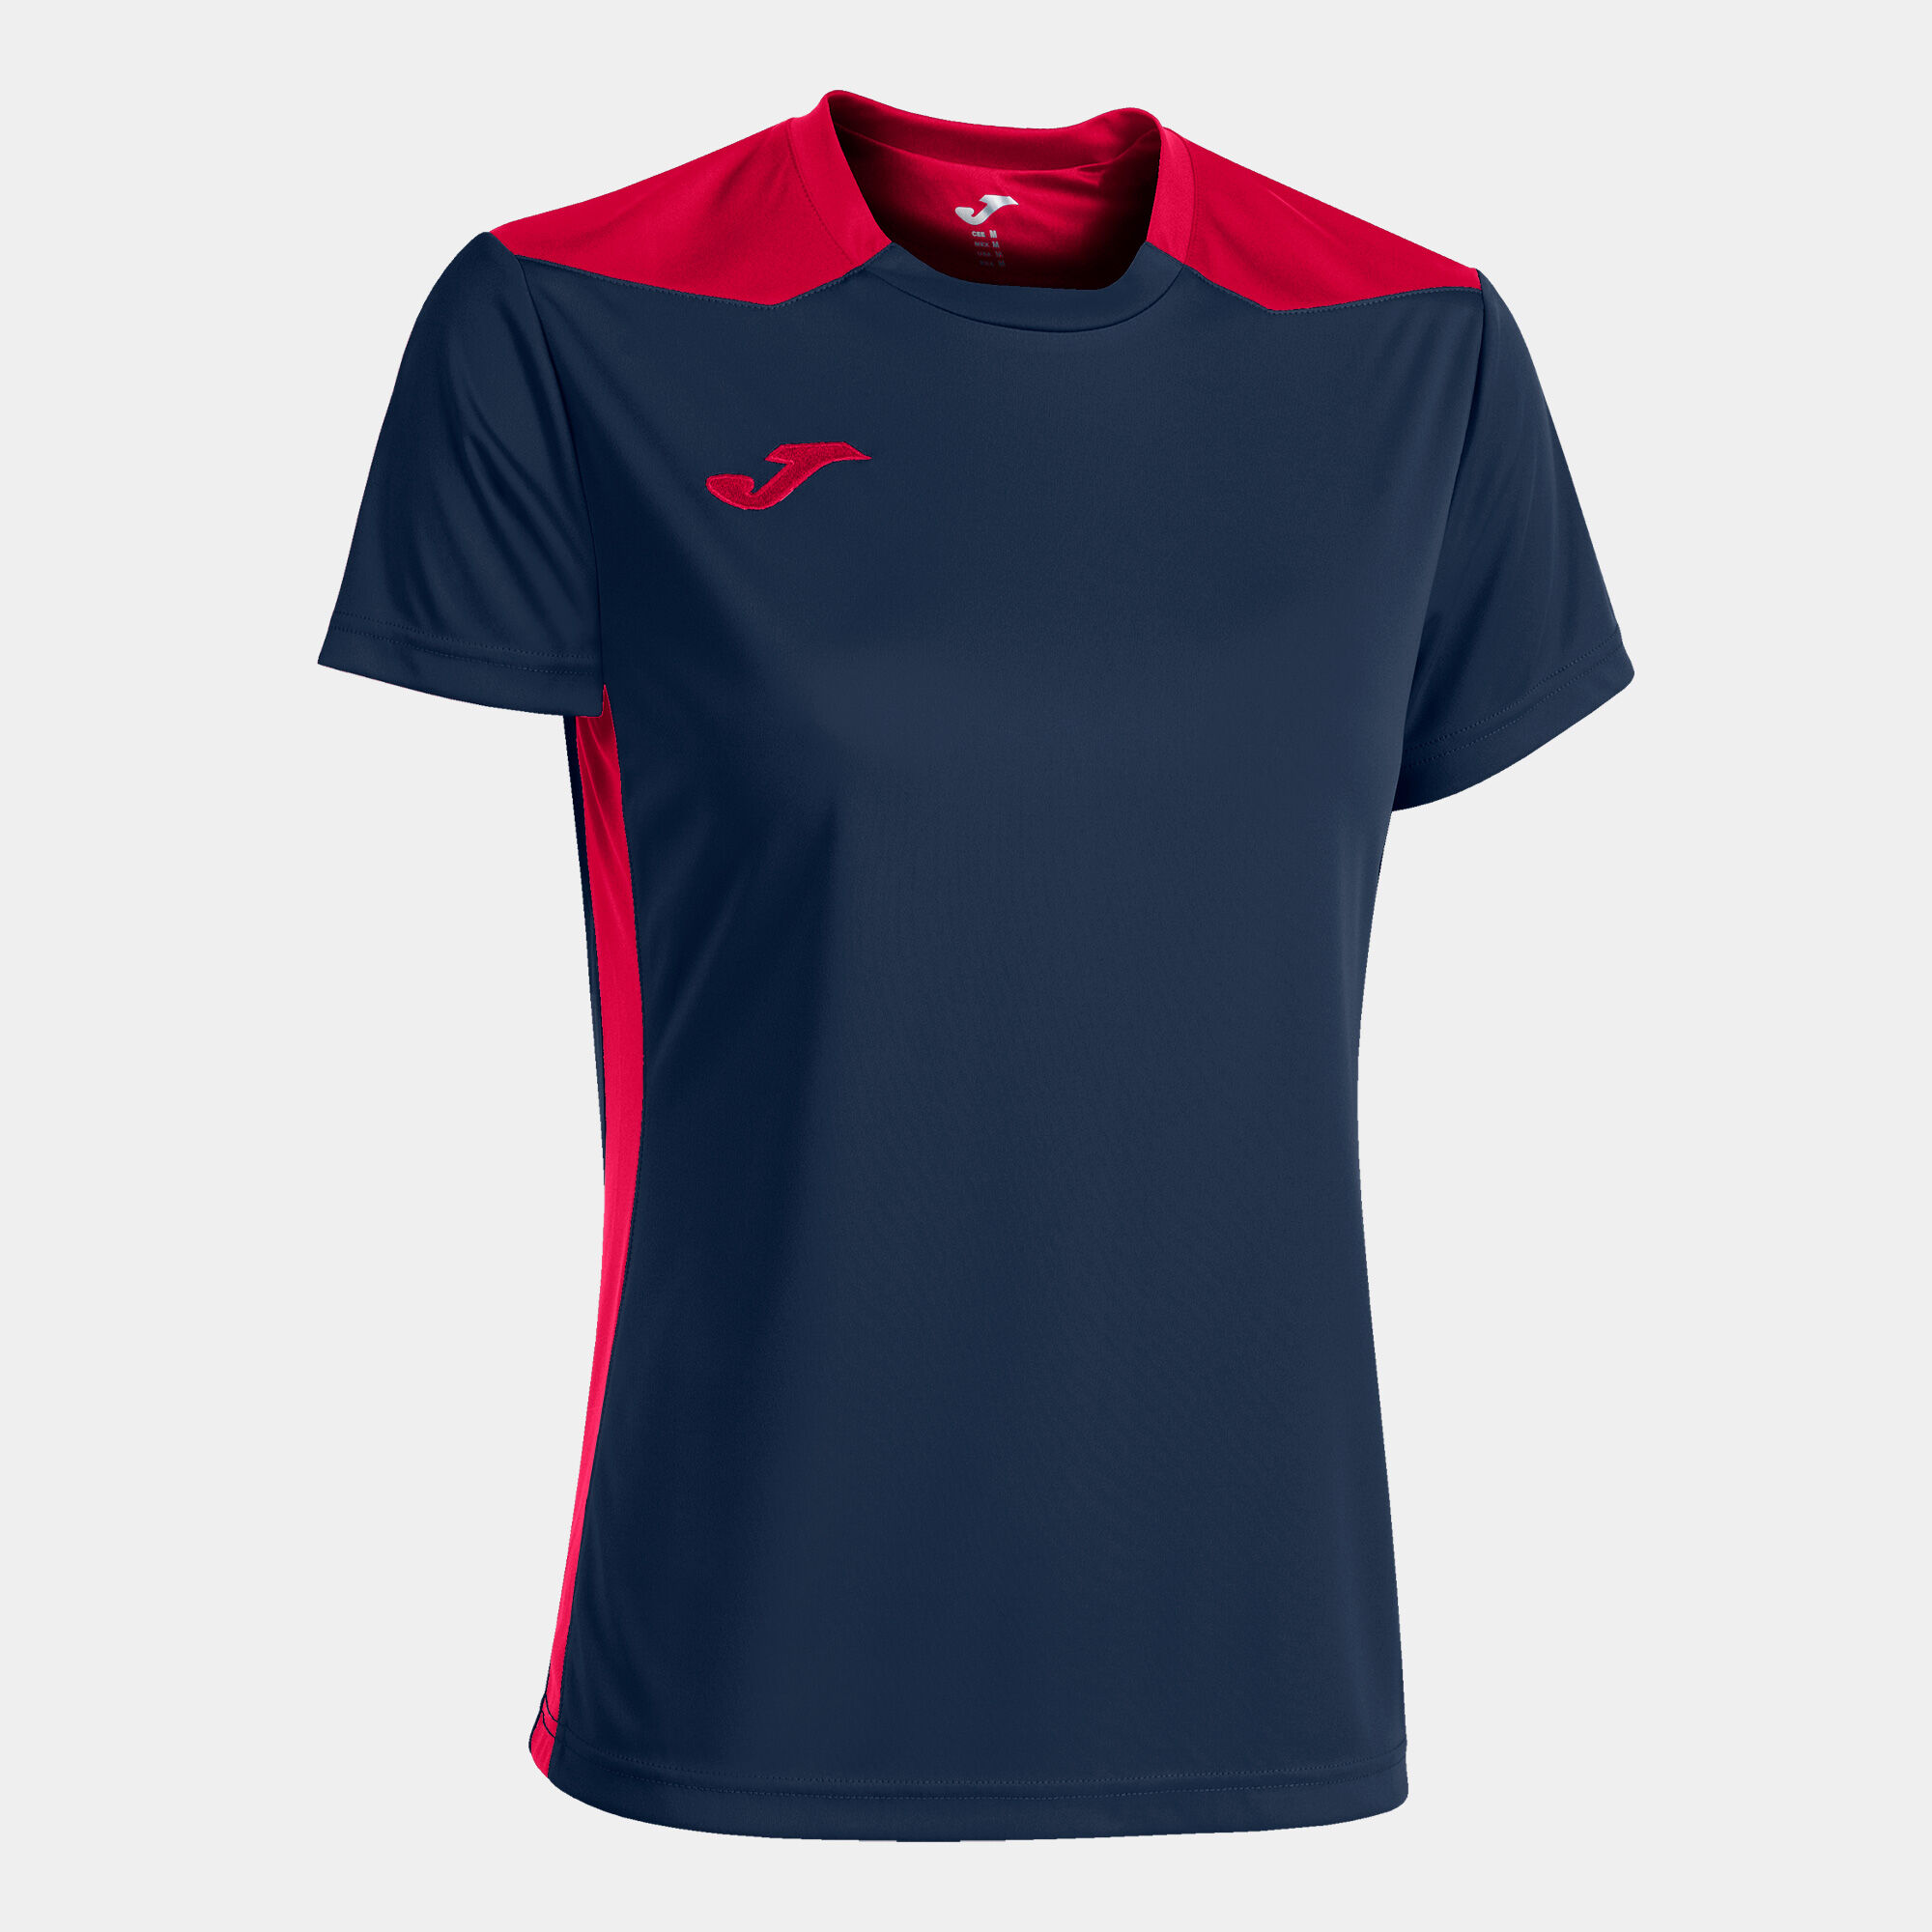 Camiseta manga corta mujer Championship VI marino rojo